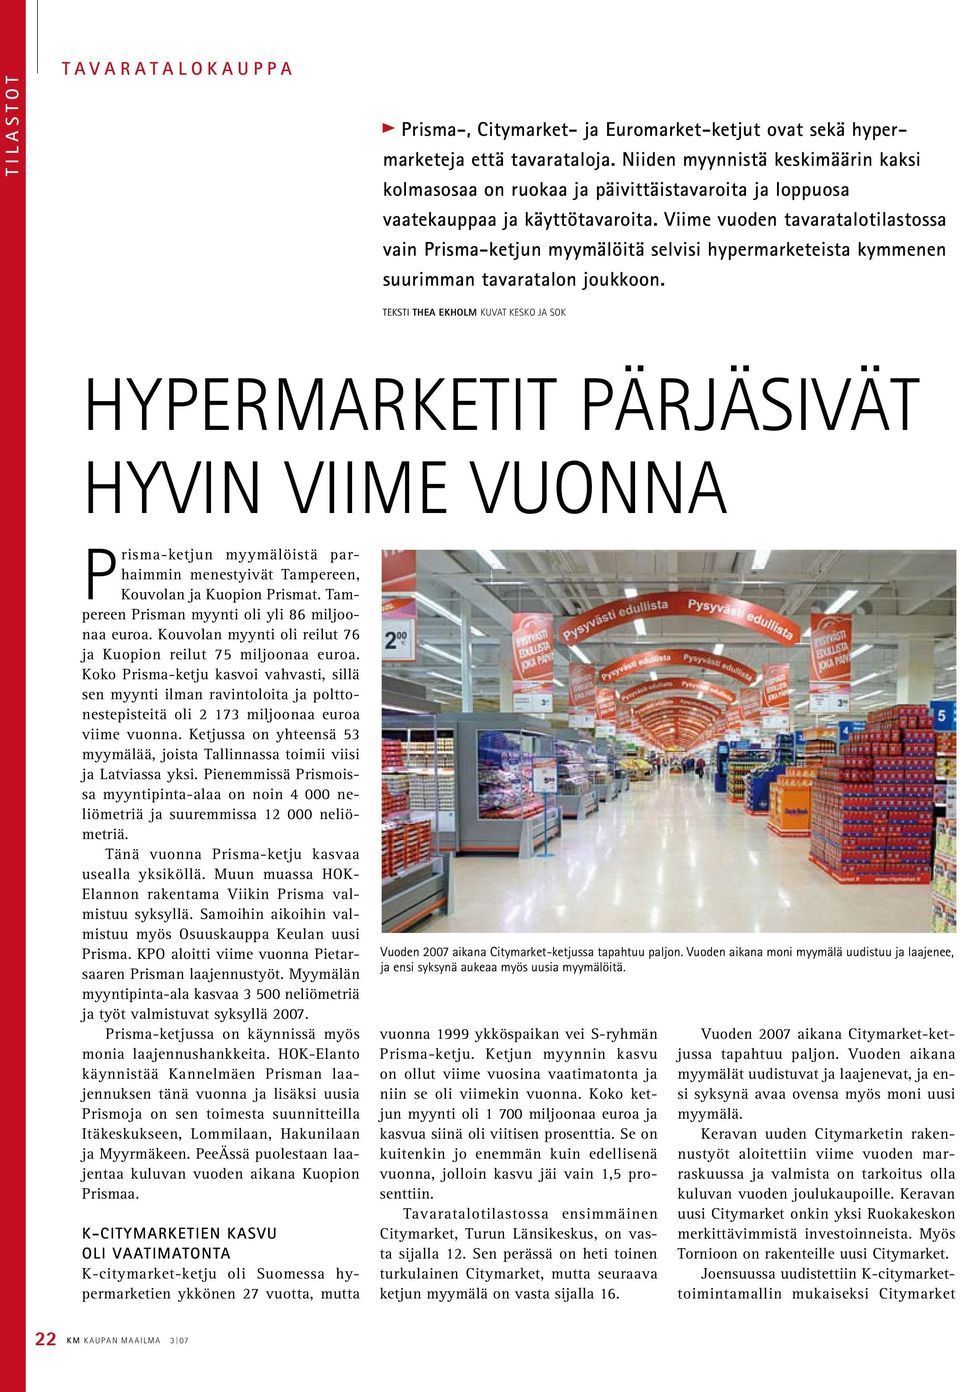 Viime vuoden tavaratalotilastossa vain Prisma-ketjun myymälöitä selvisi hypermarketeista kymmenen suurimman tavaratalon joukkoon.